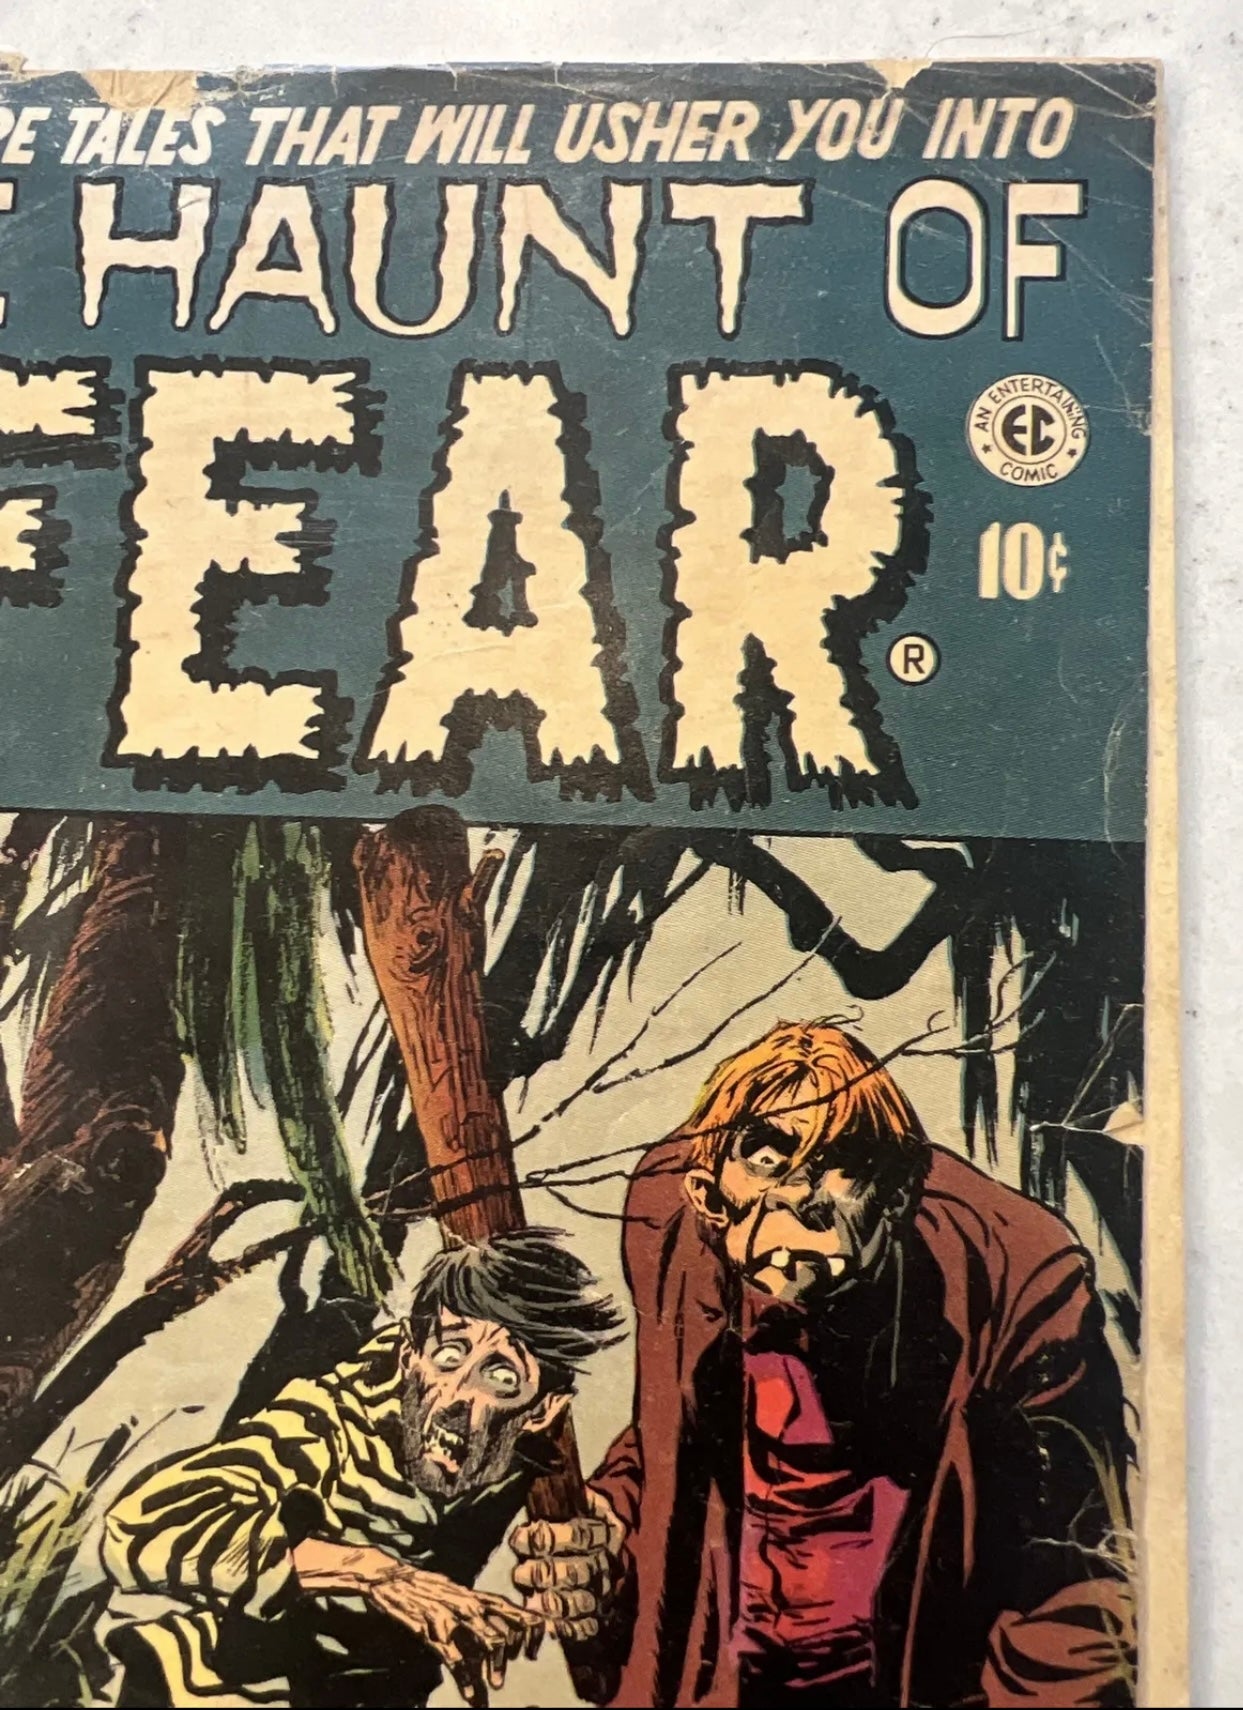 Haunt of Fear #23 (EC Comics 2nd Series/1953) Pre Code Horror